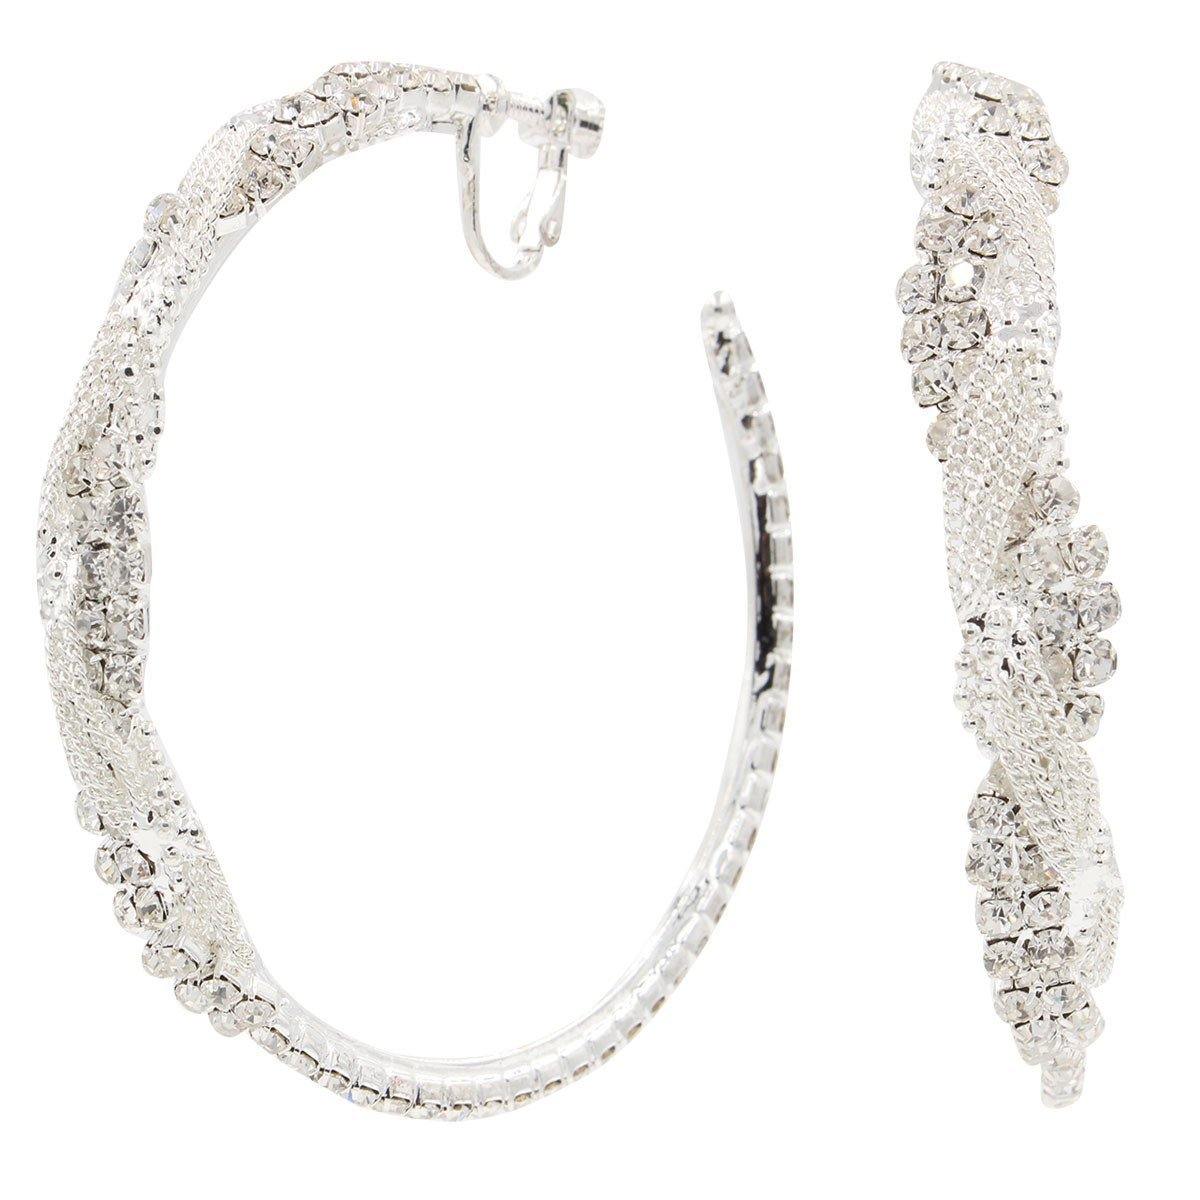 Clip On Stunning Crystal Braided Hoop Earrings